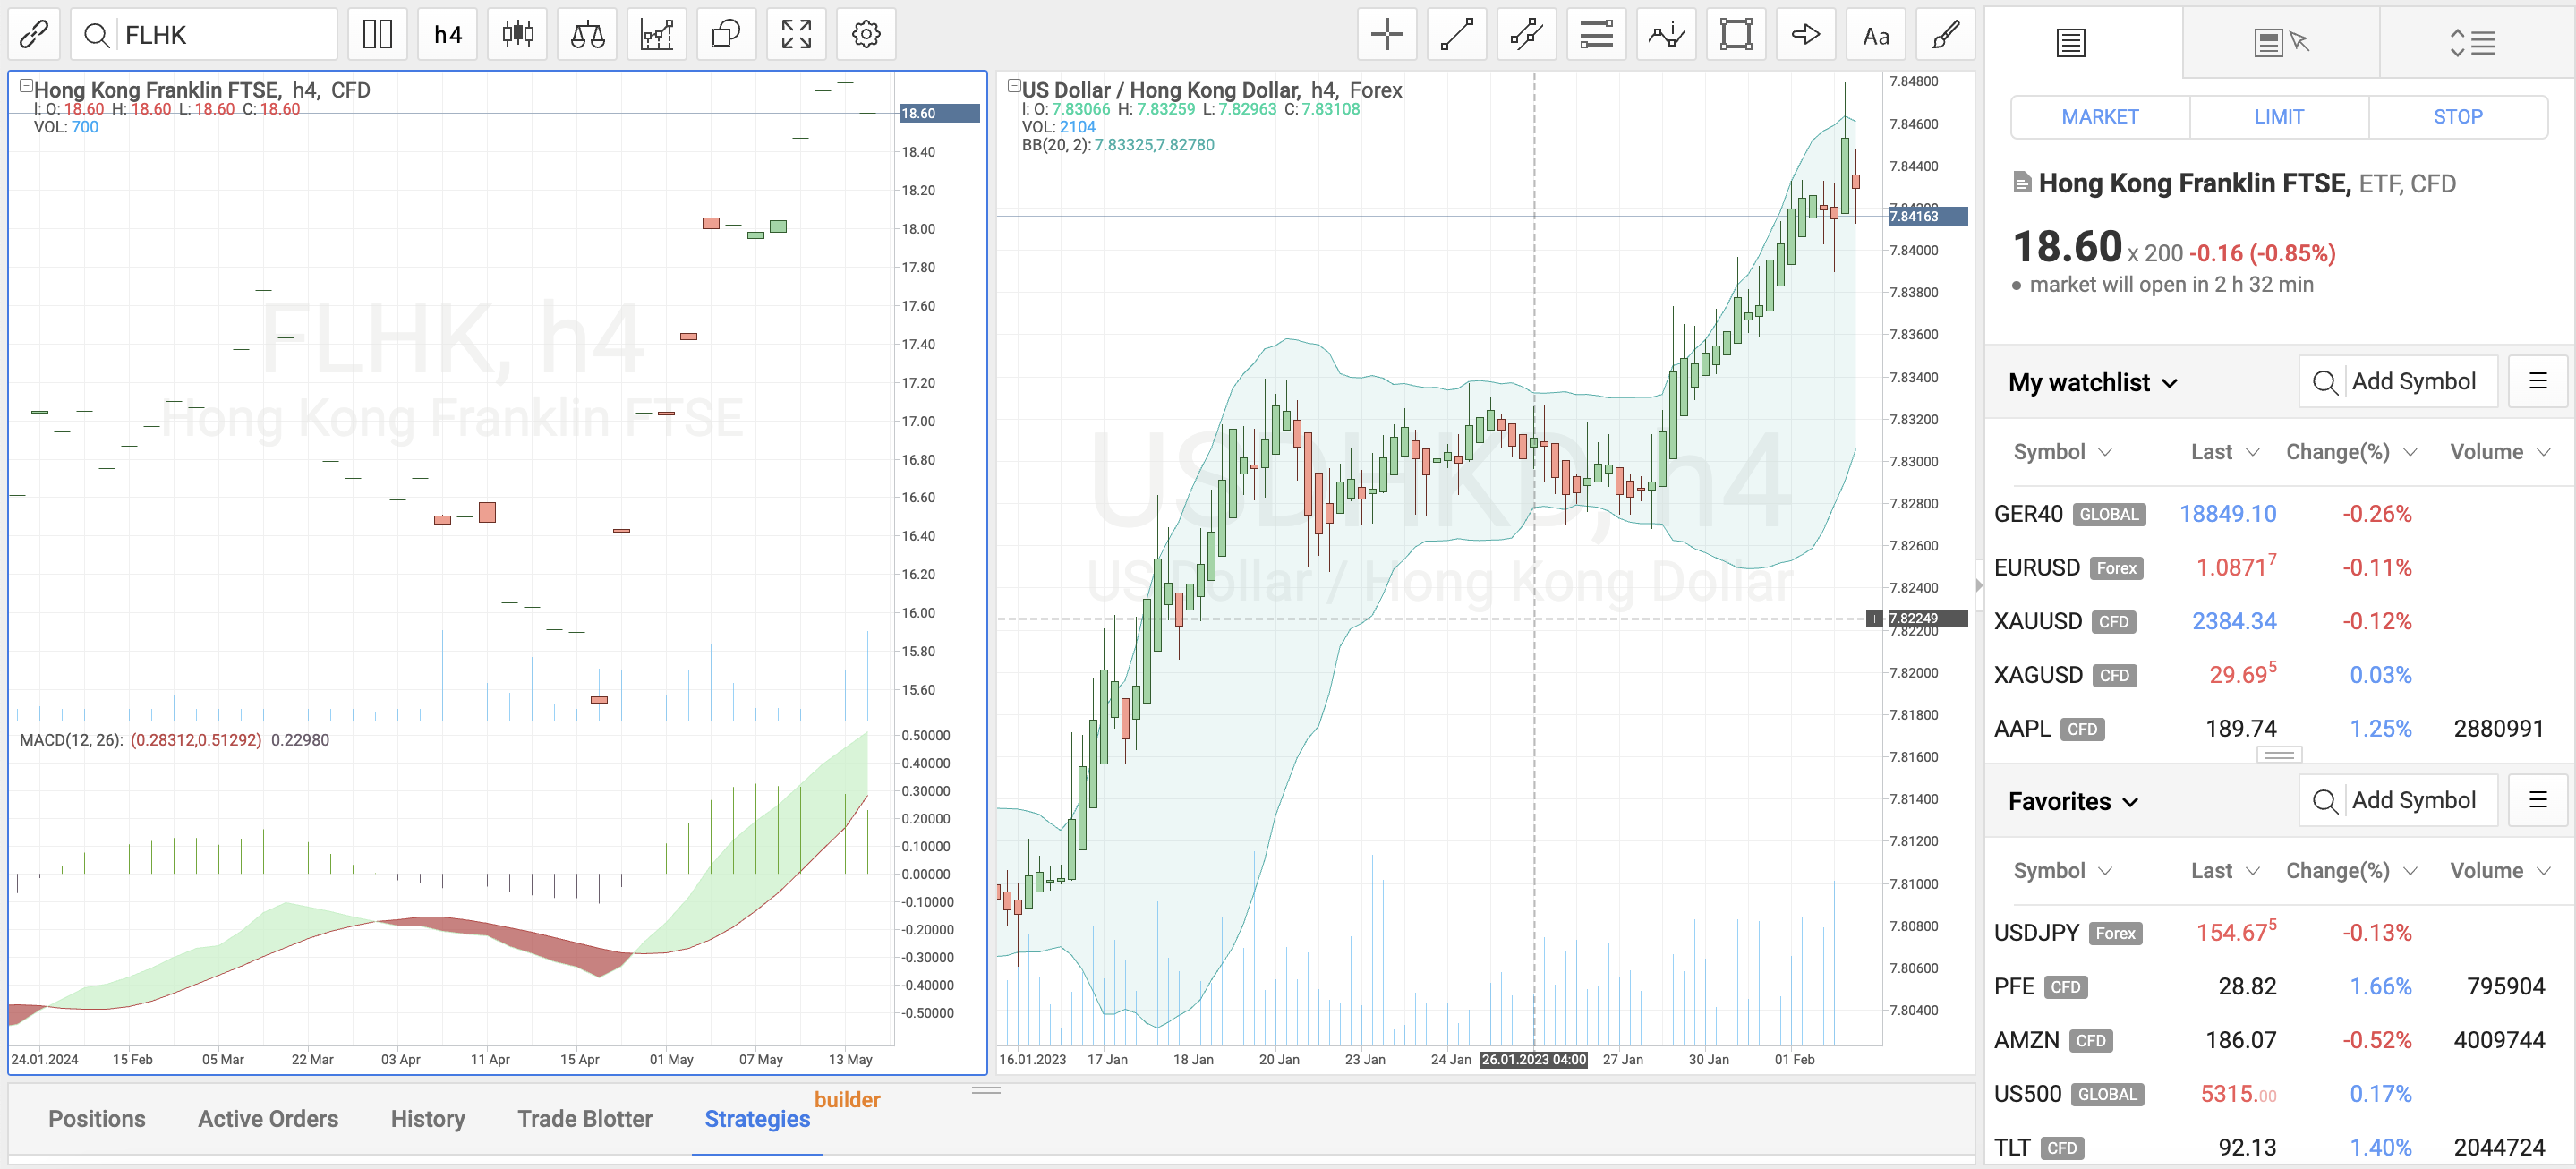 R Stocks Trader at RoboForex showing USD/HKD and Hong Kong Franklin FTSE charts